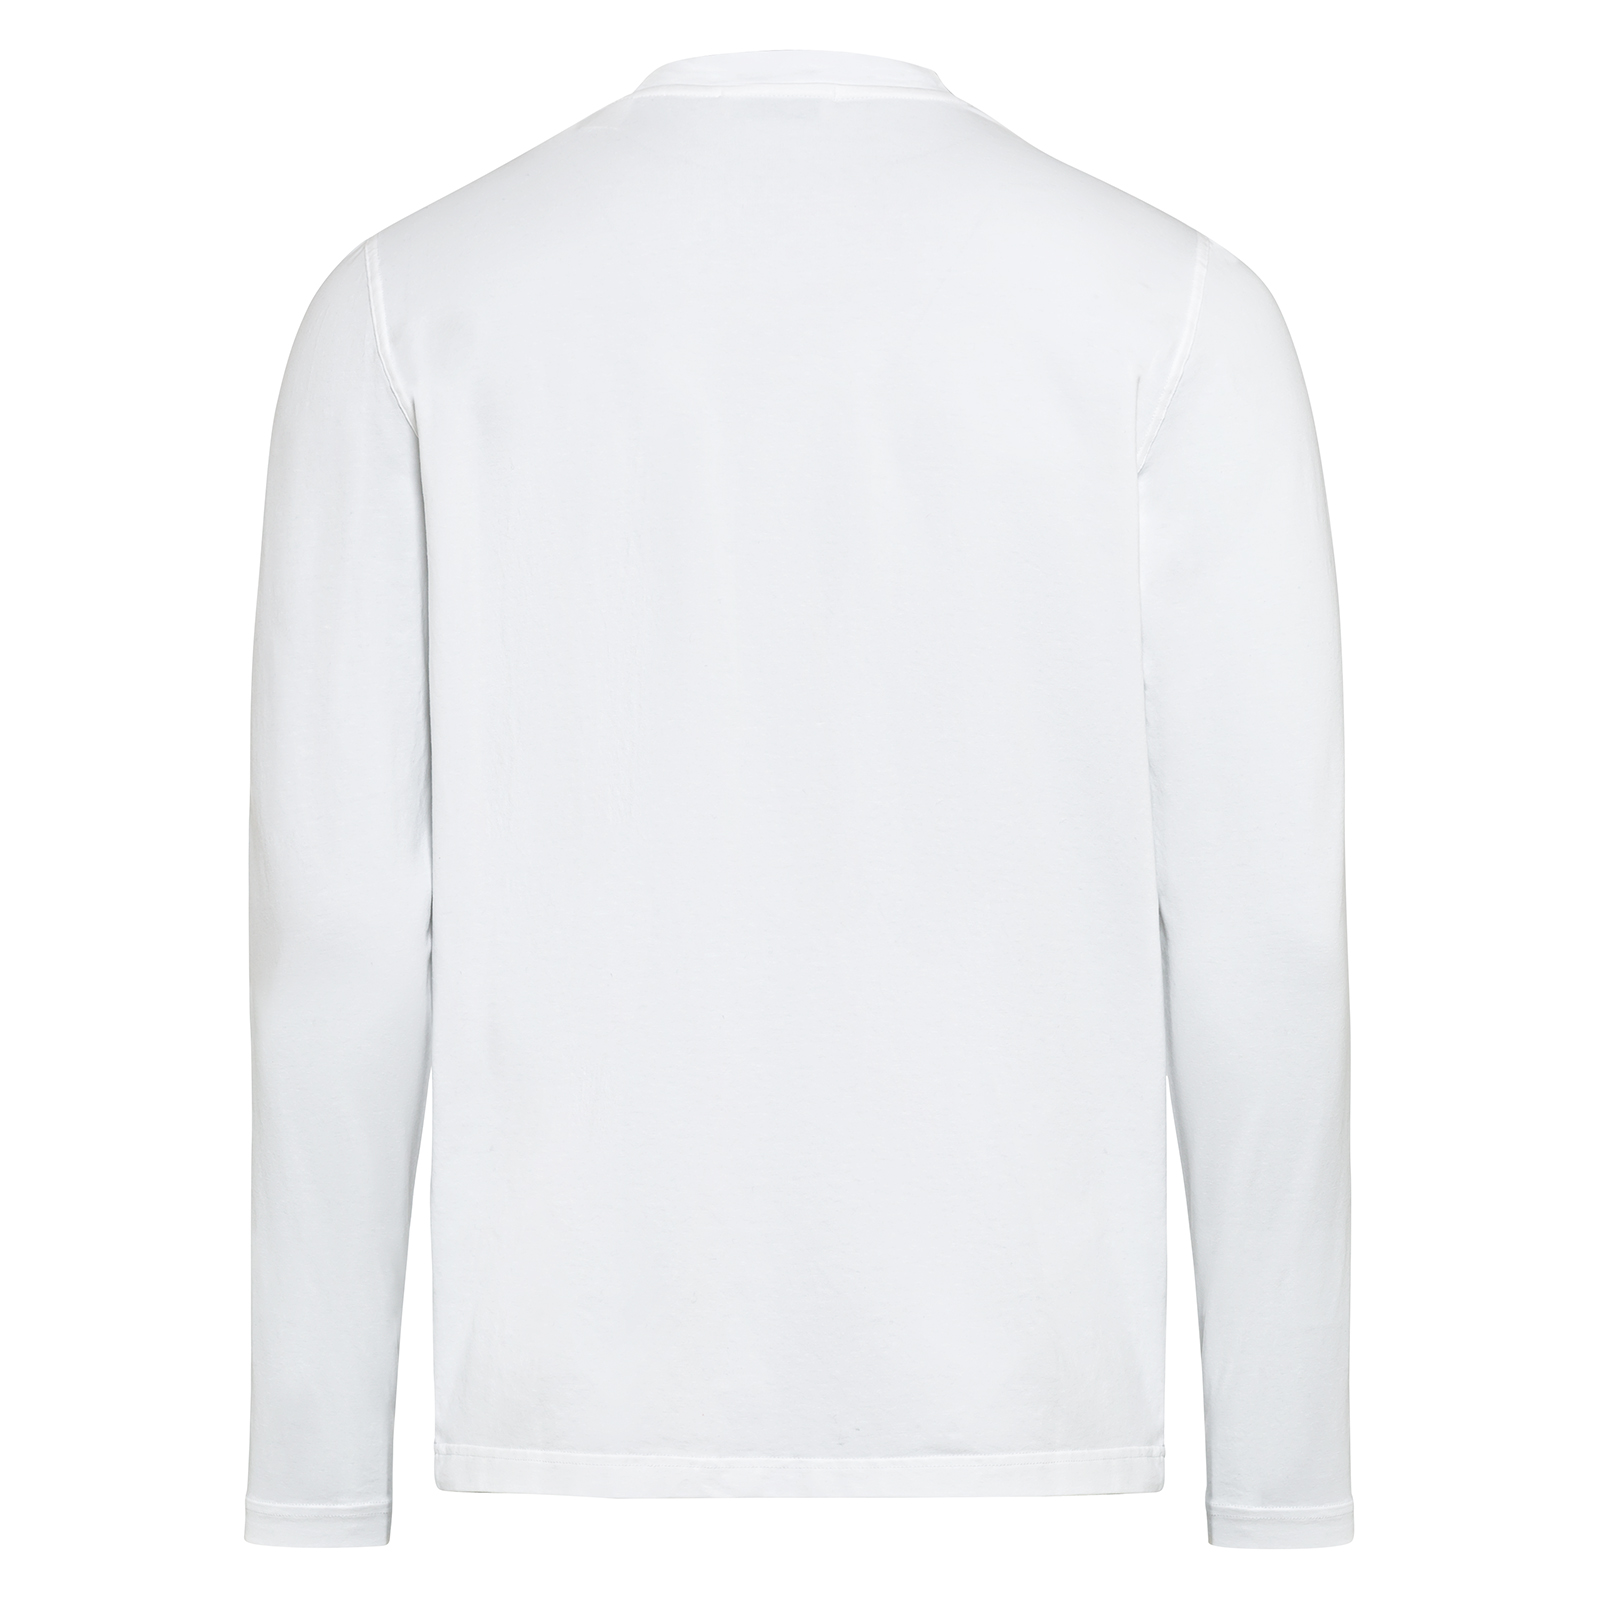 Camiseta de manga larga de algodón orgánico con gran impresión frontal para hombre